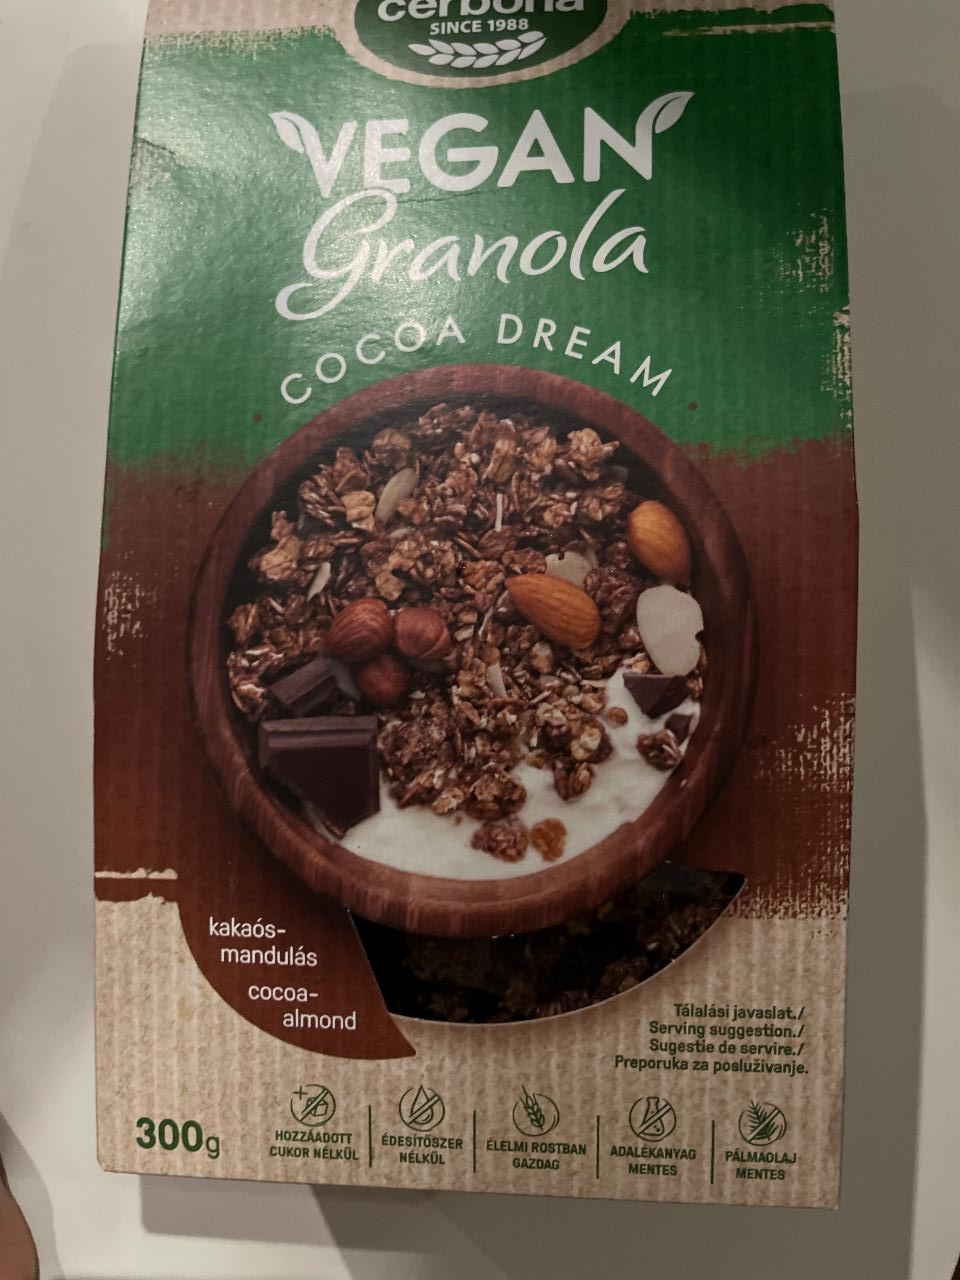 Fotografie - vegan granola cocoa dream Cerbona